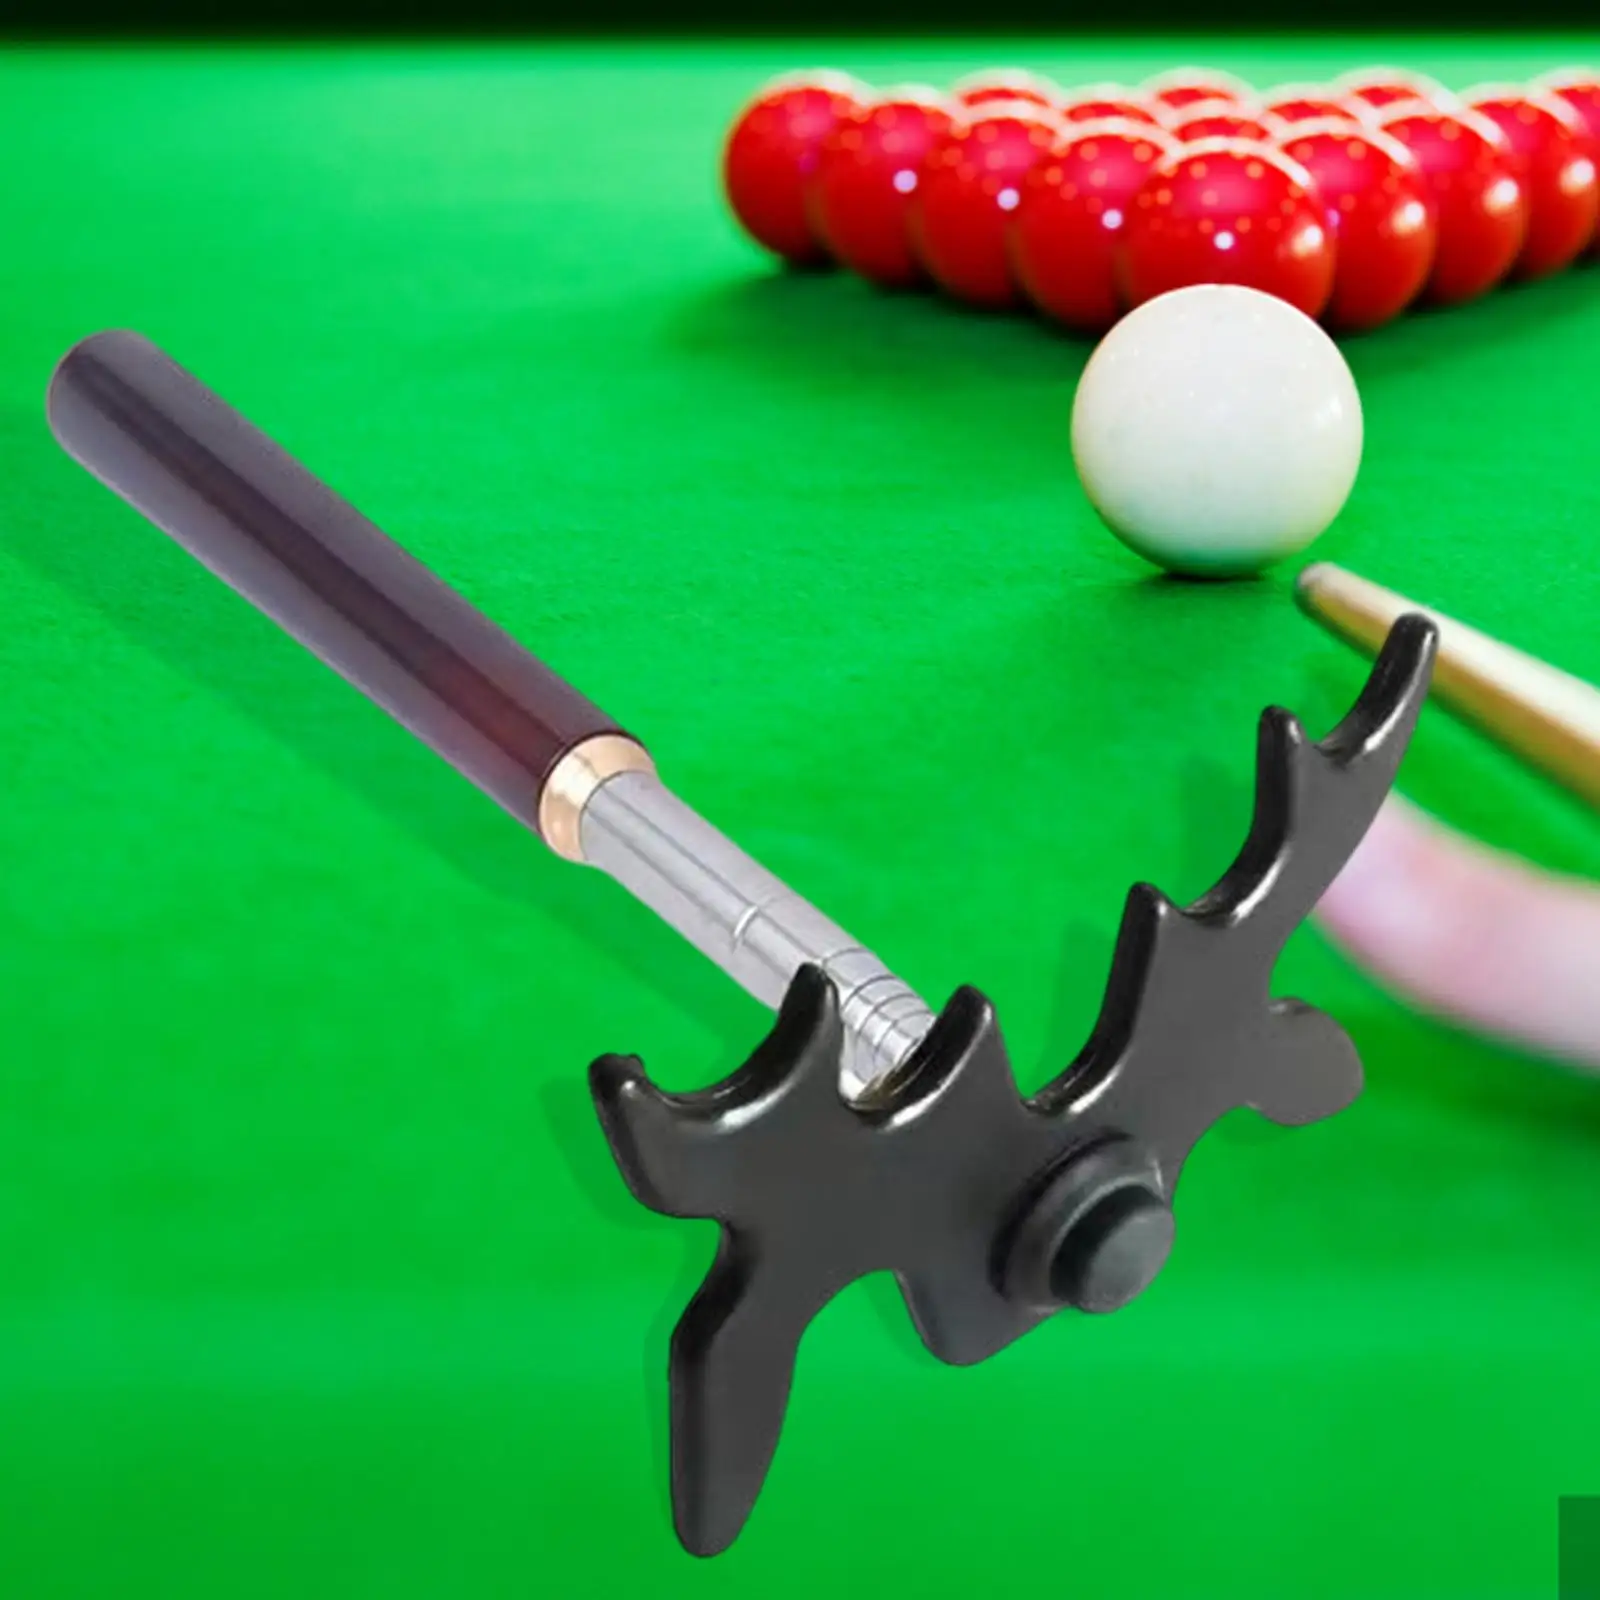 Billiards Cue Bridge Moose Head Retractable Pool Table Accessories Snooker